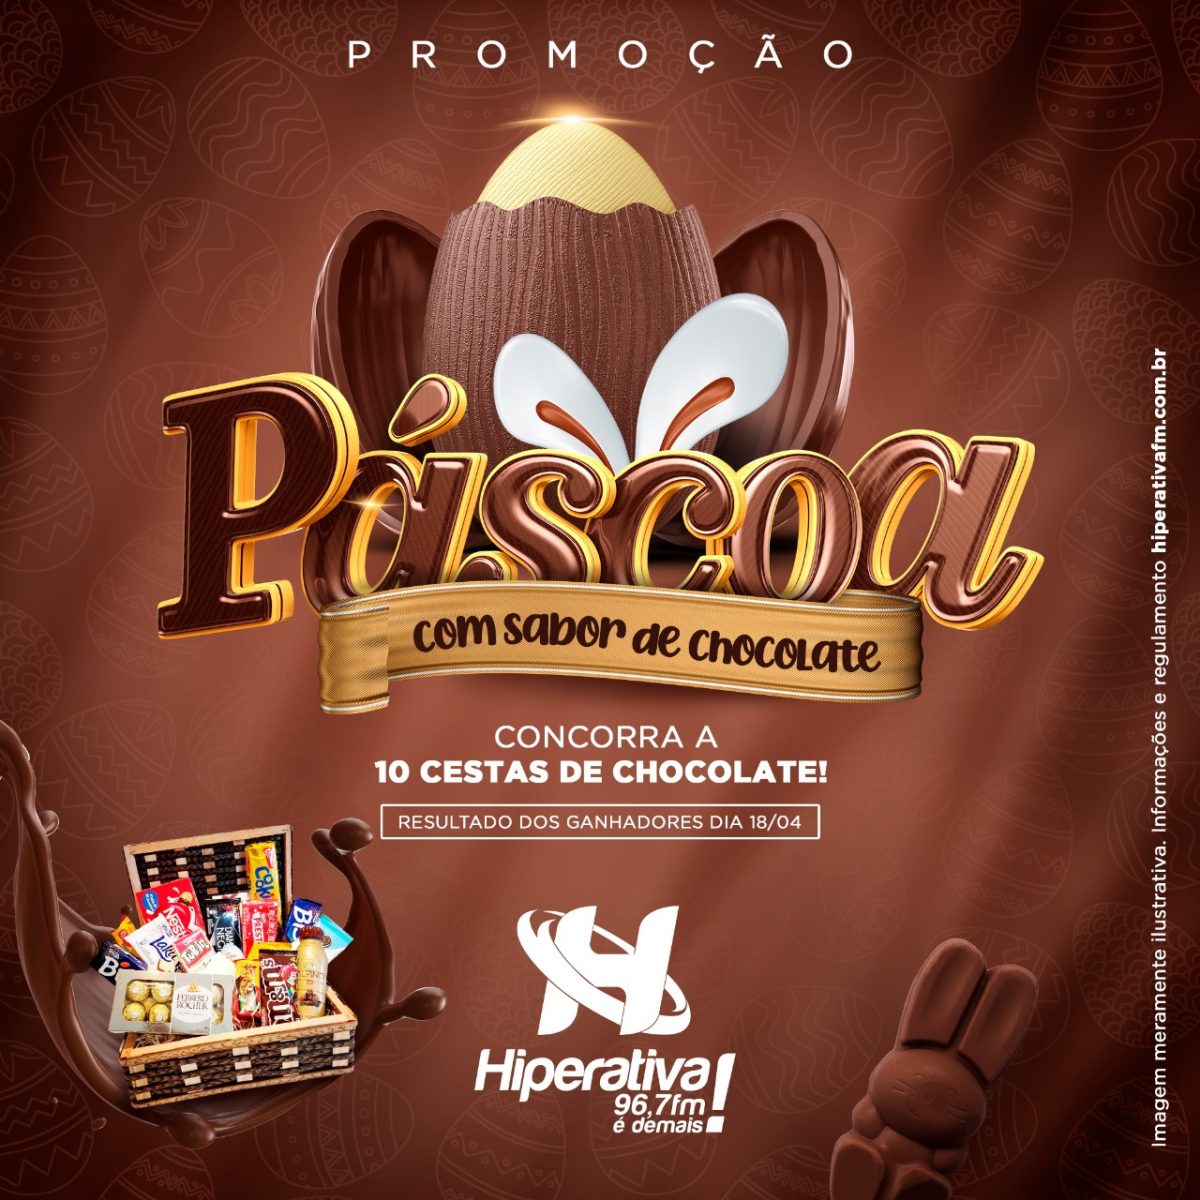 “PÁSCOA COM SABOR DE CHOCOLATE!”